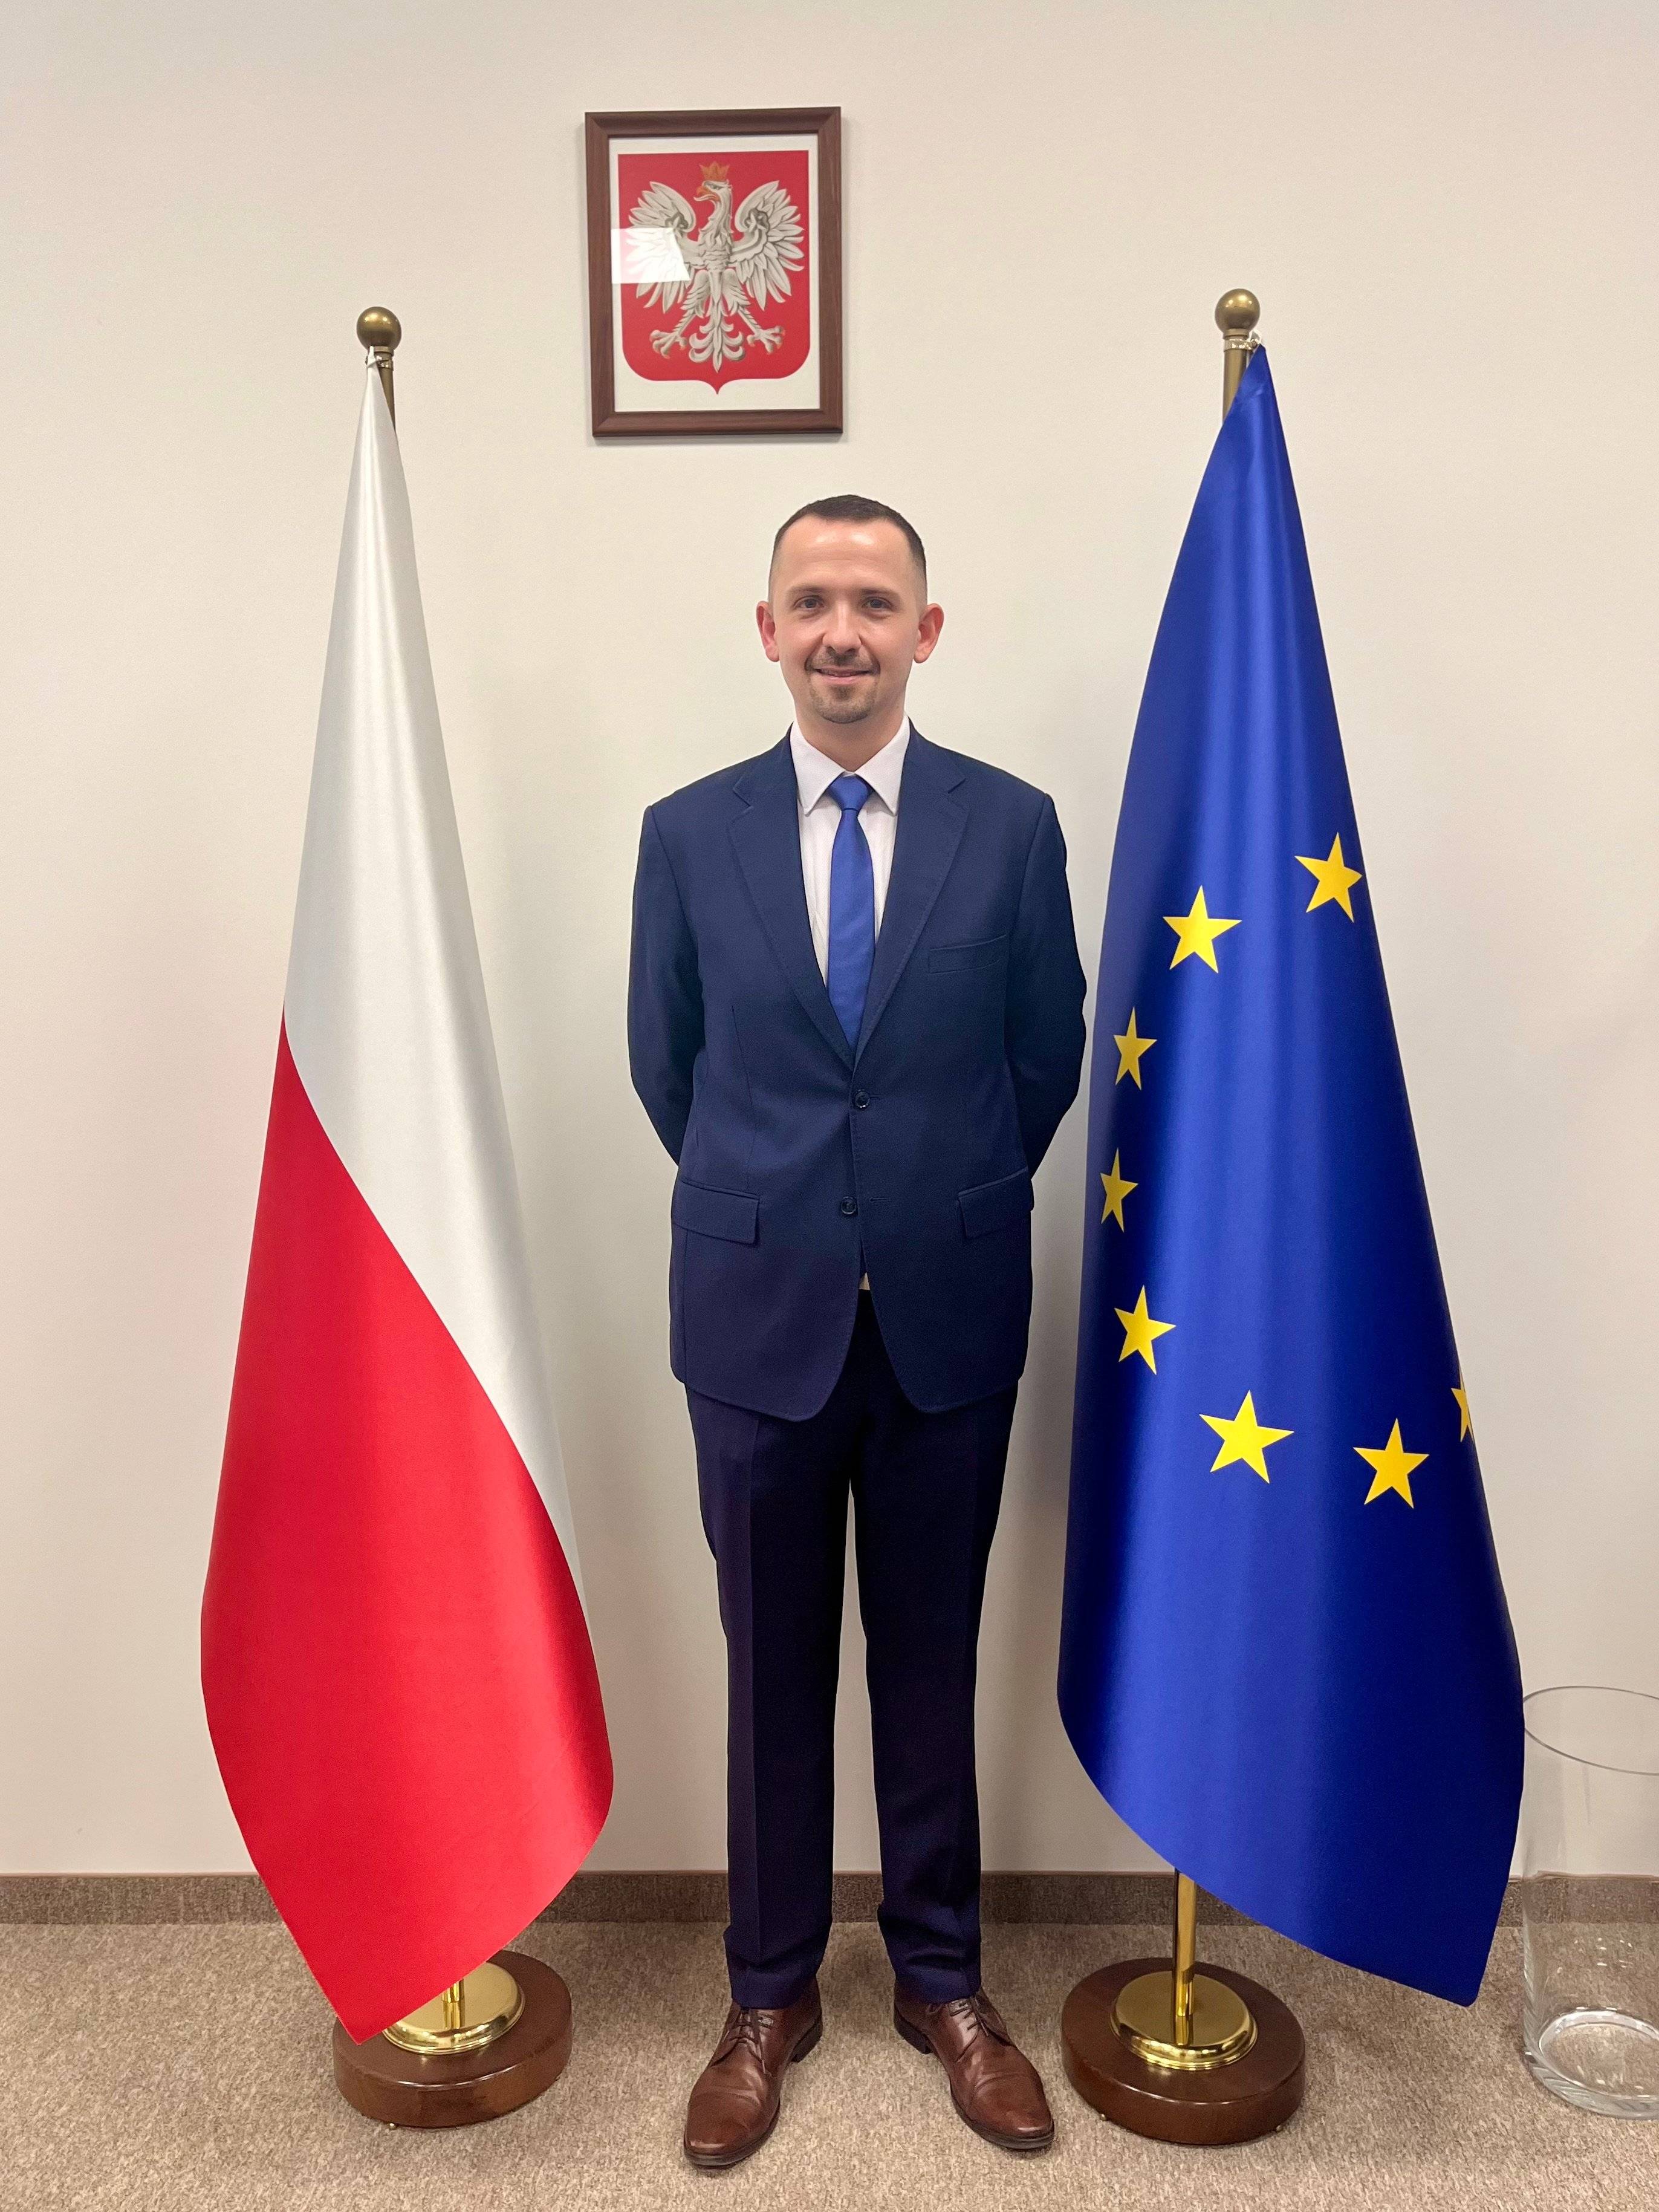 Młody męzczyzna w garniturze stoi między polską i unijna flagą, nad nim godło państwowe